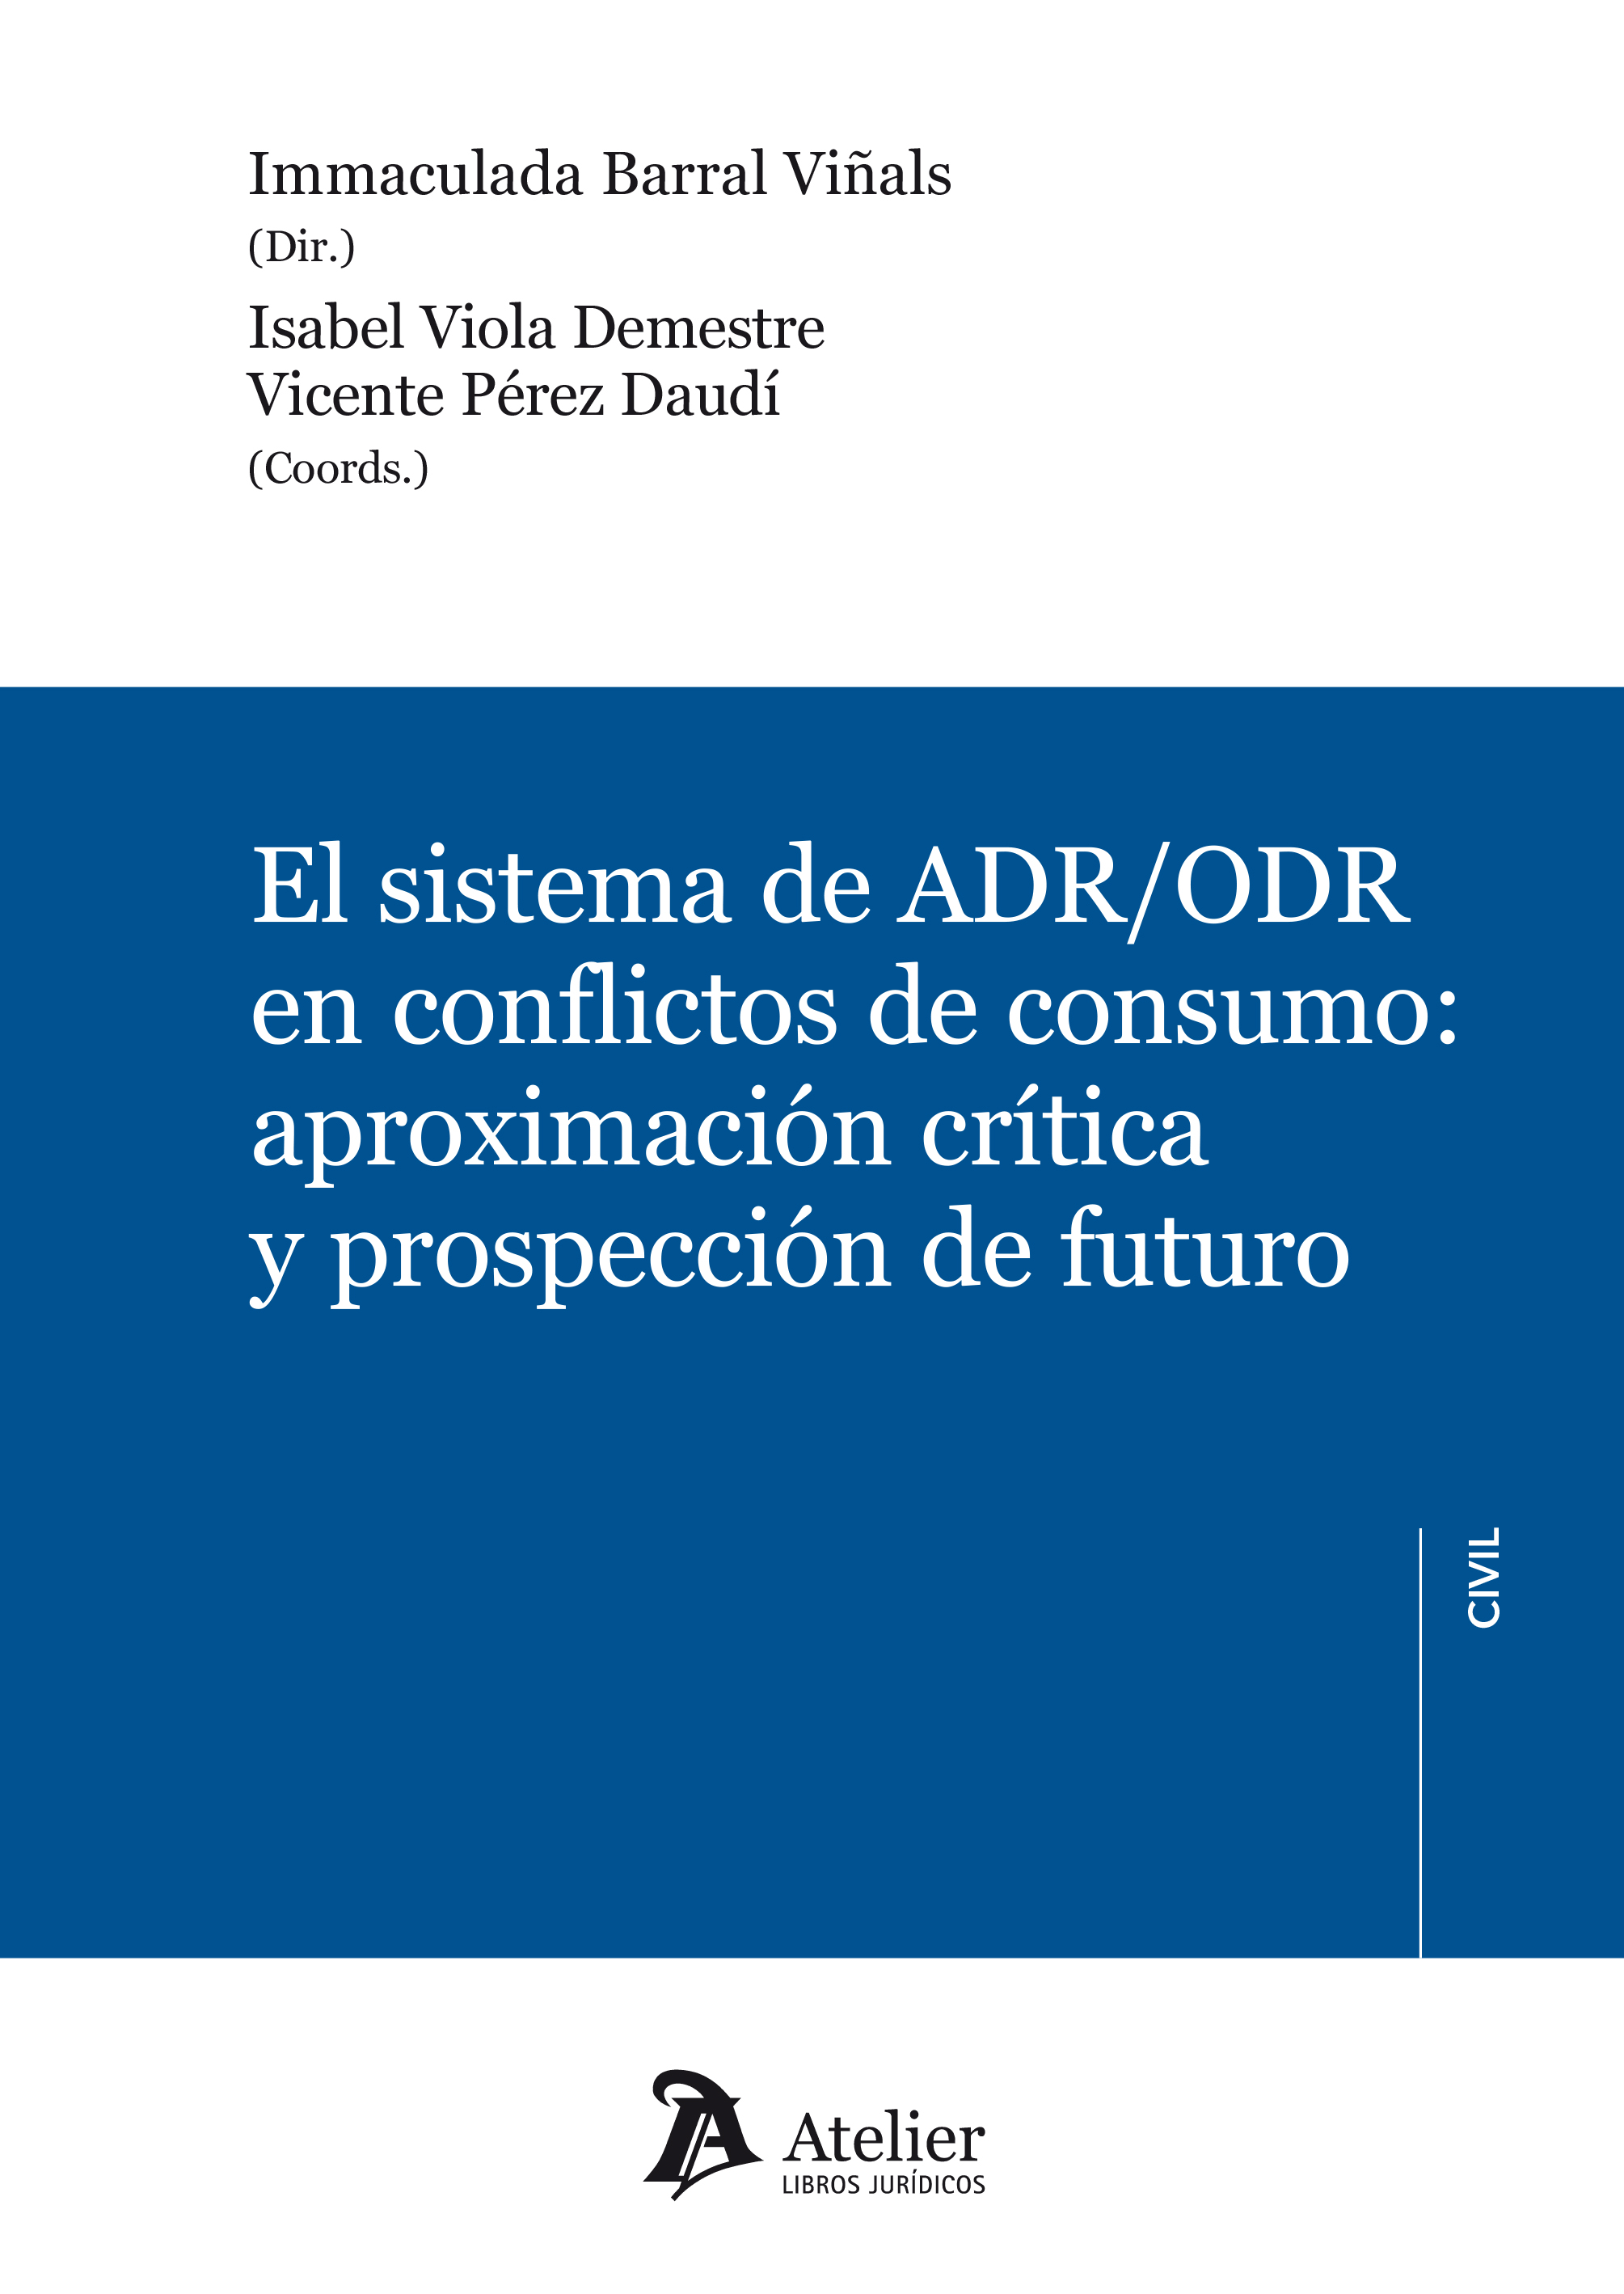 El sistema de ADR/ODR en conflictos de consumo